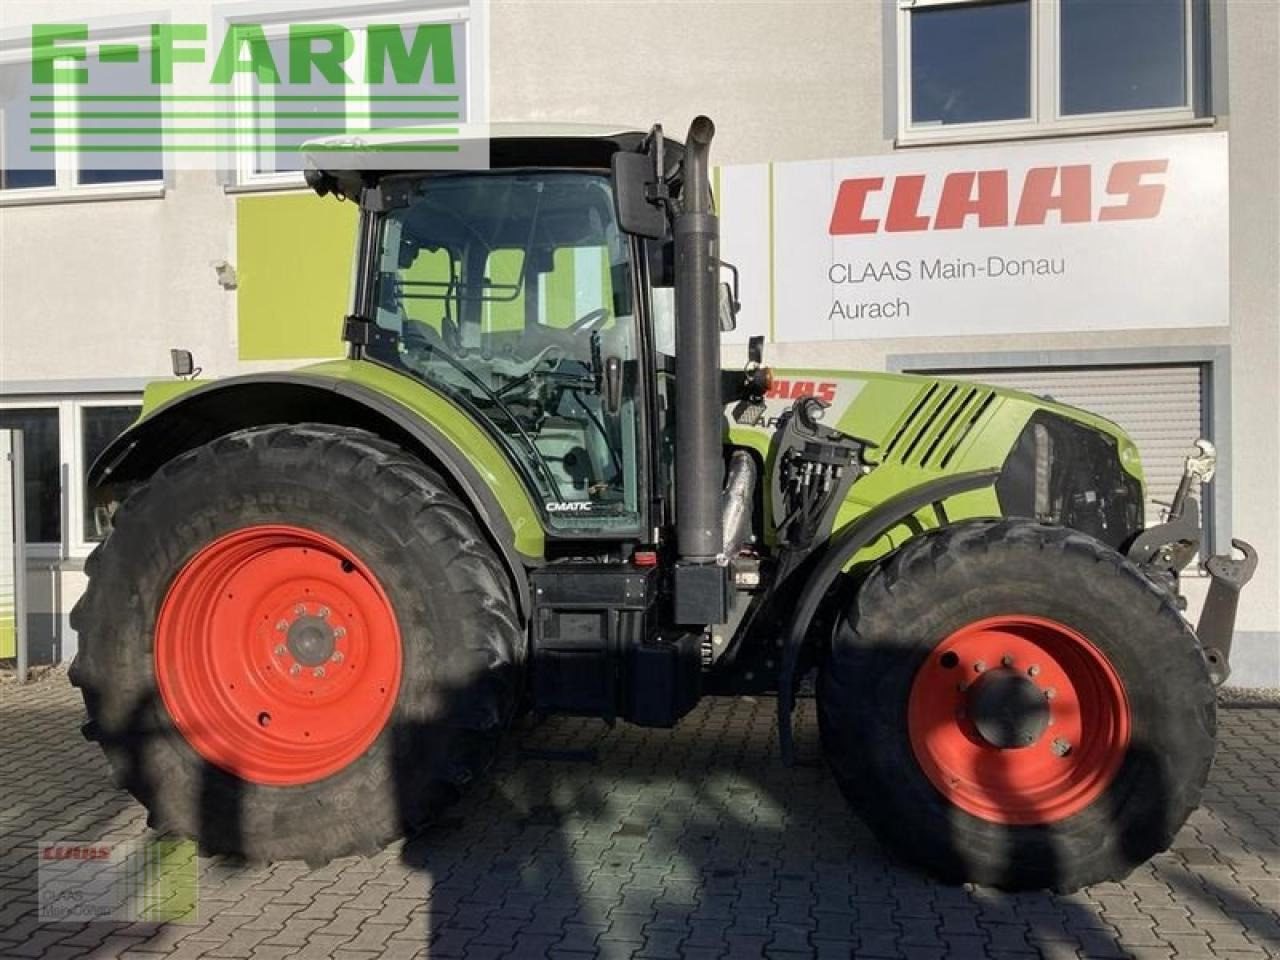 Traktor CLAAS arion 650 cmatic